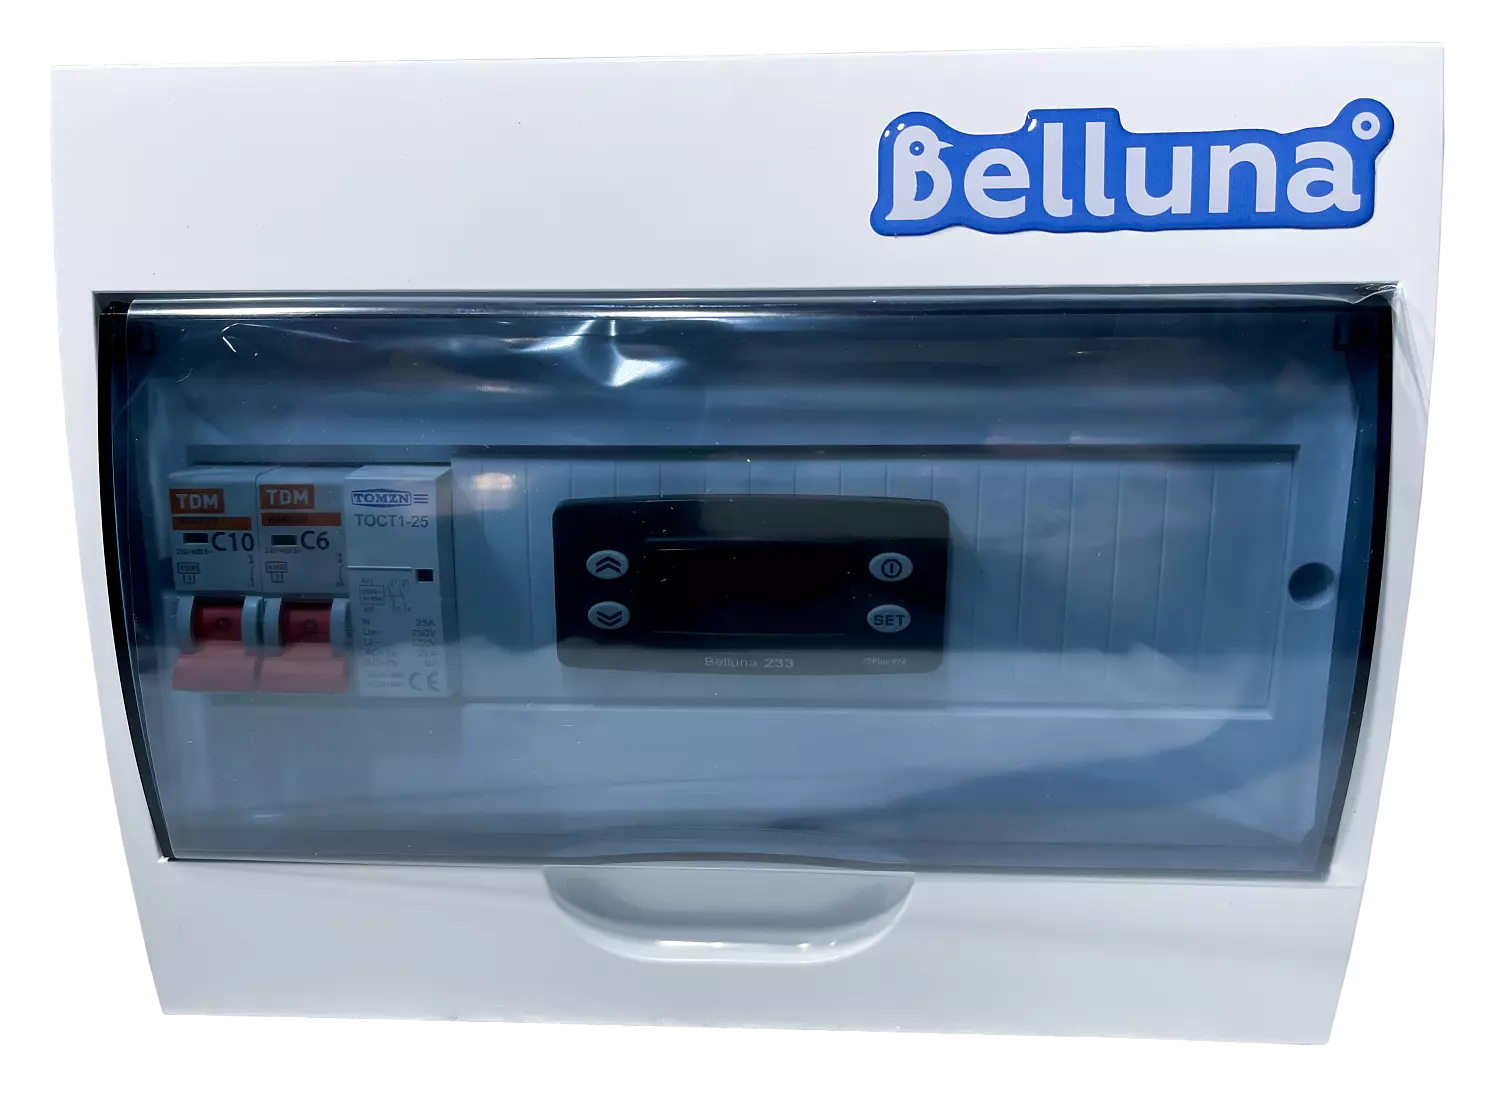 сплит-система Belluna U103 Тамбов